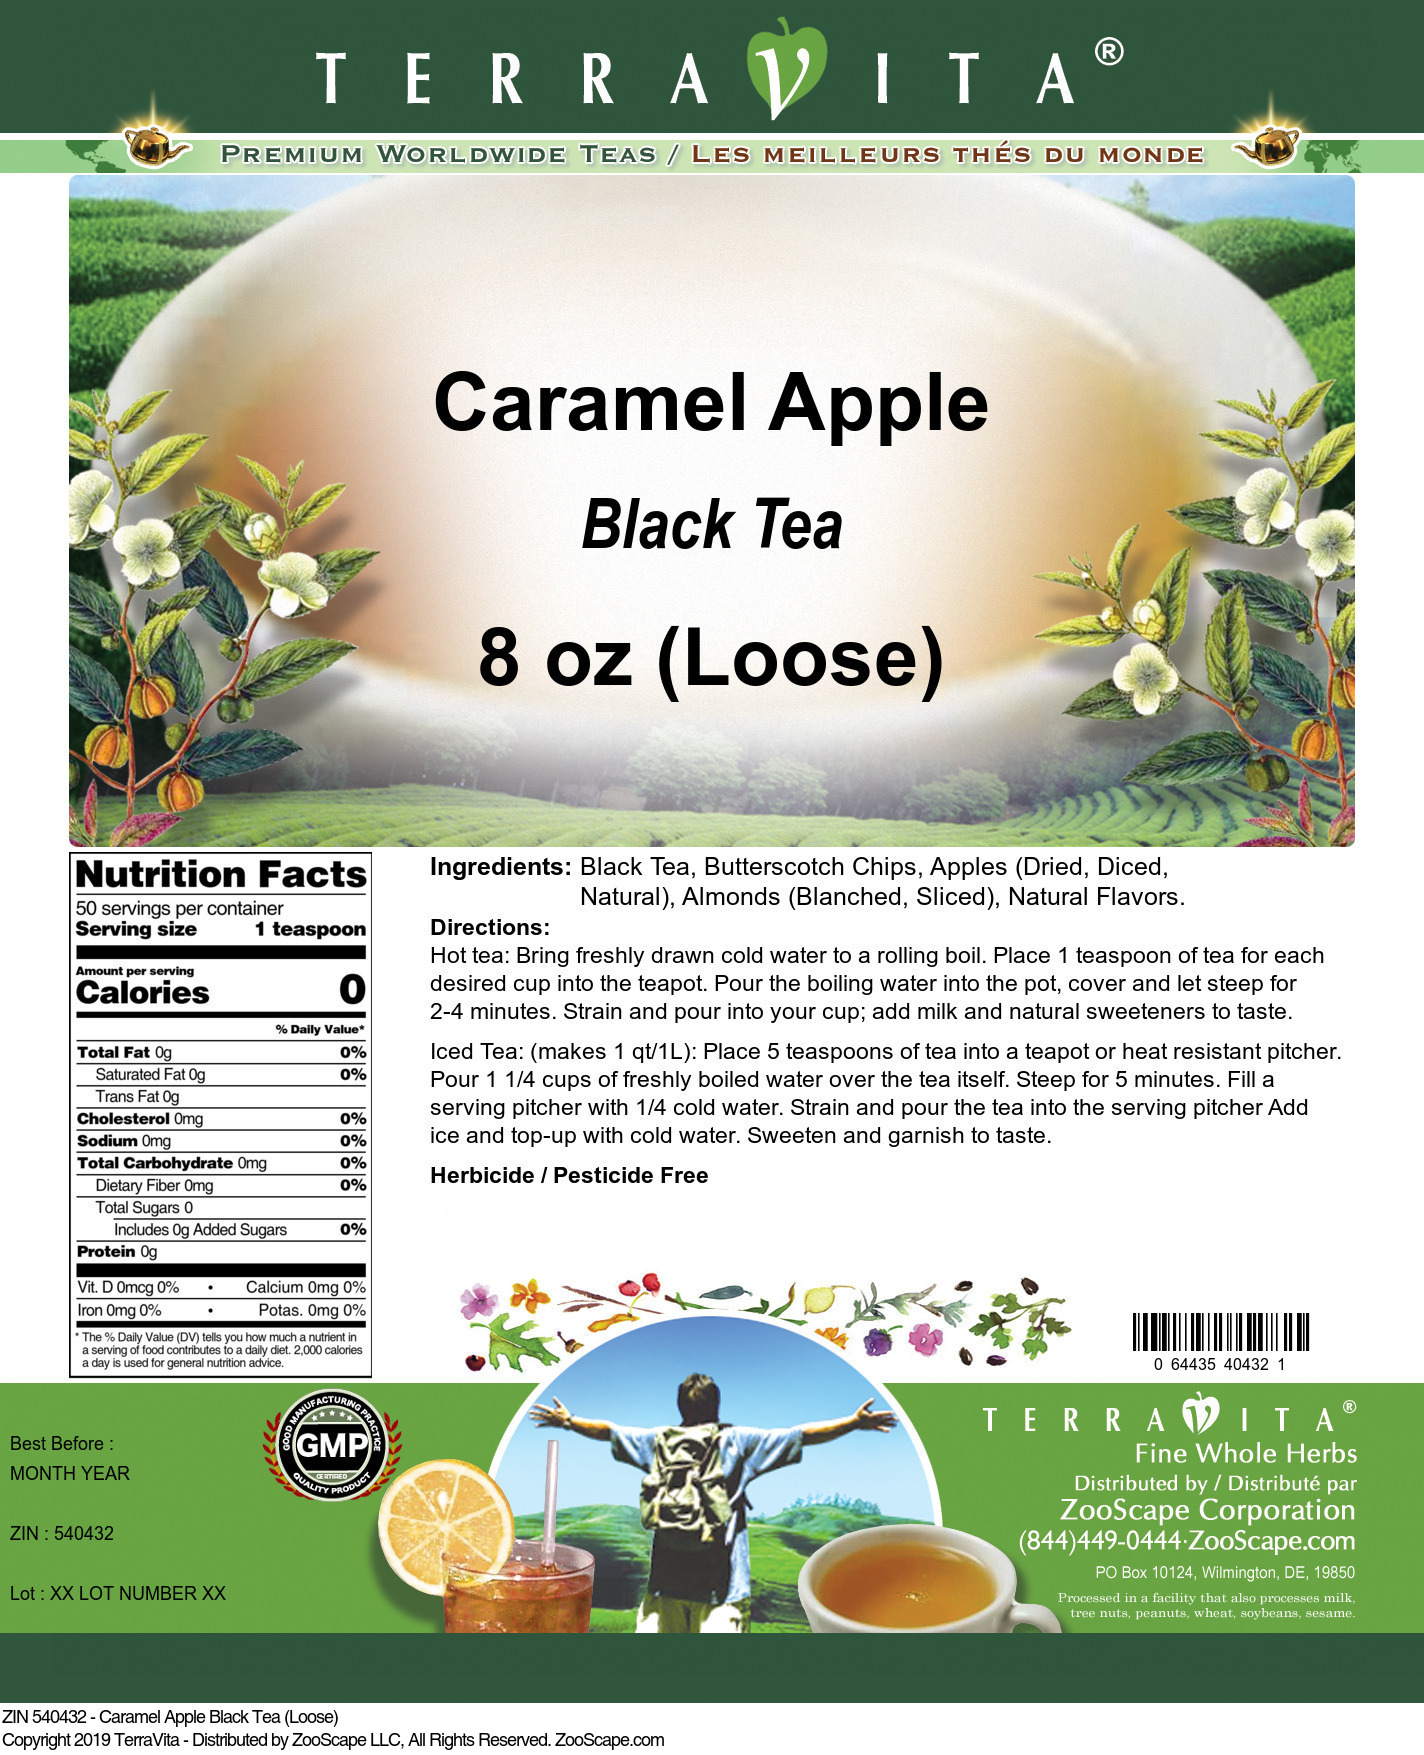 Caramel Apple Black Tea (Loose) - Label